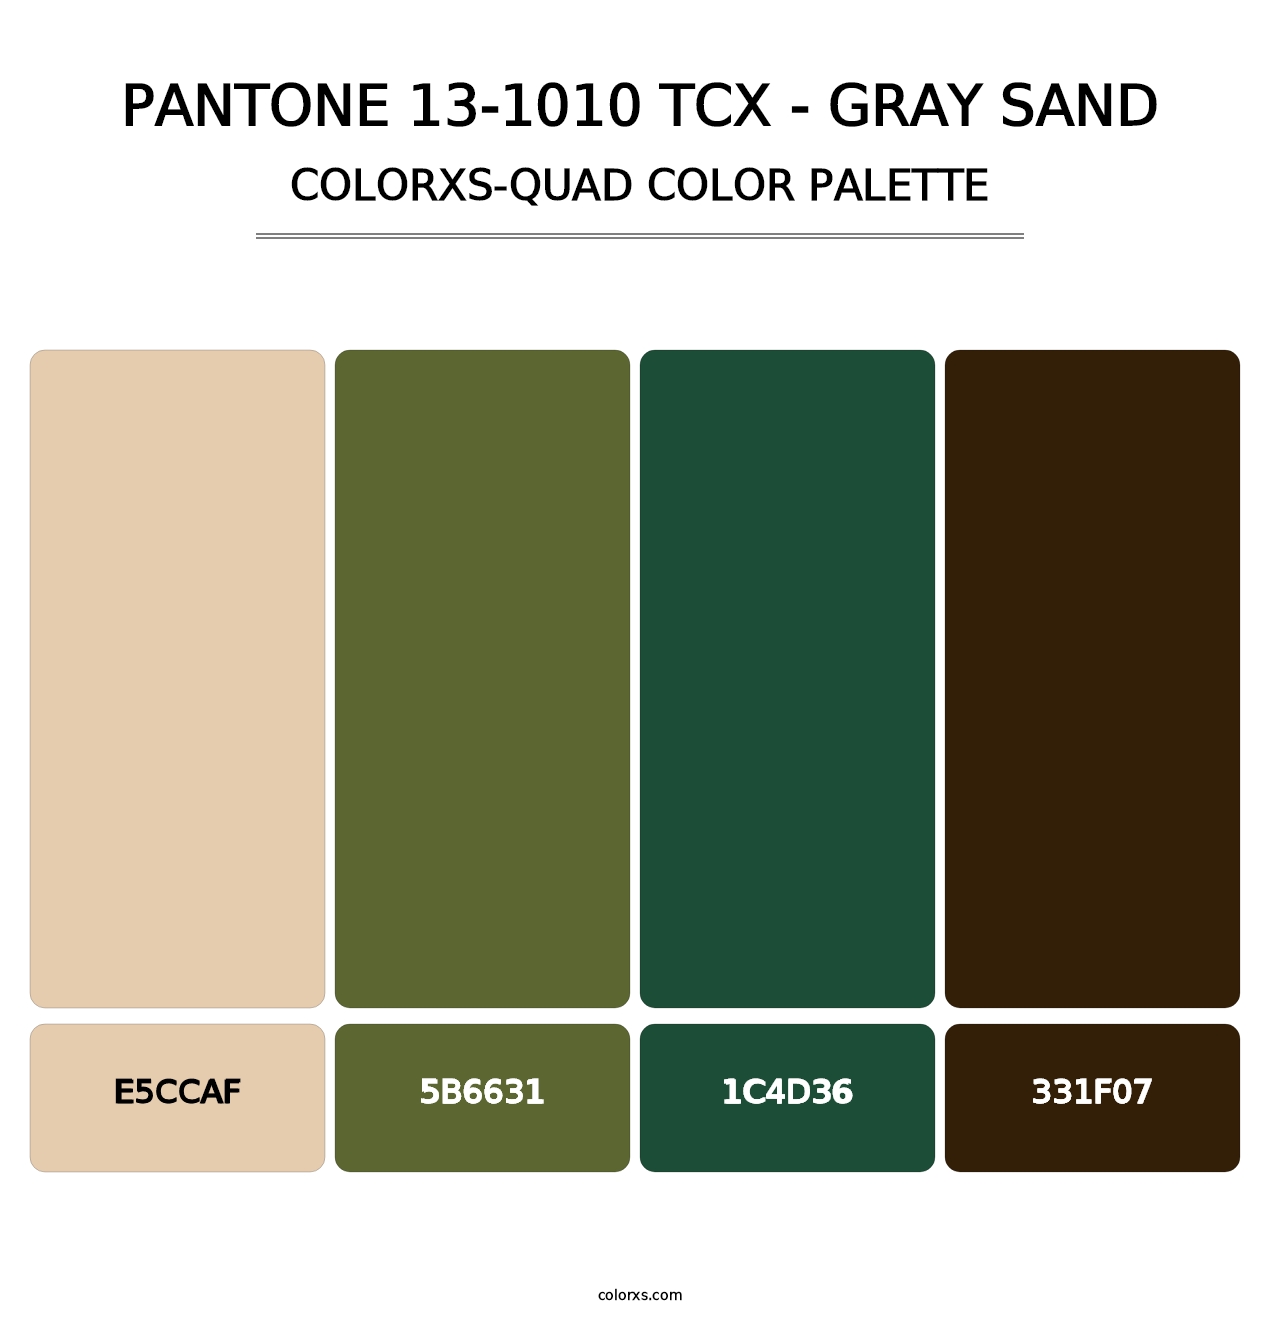 PANTONE 13-1010 TCX - Gray Sand - Colorxs Quad Palette